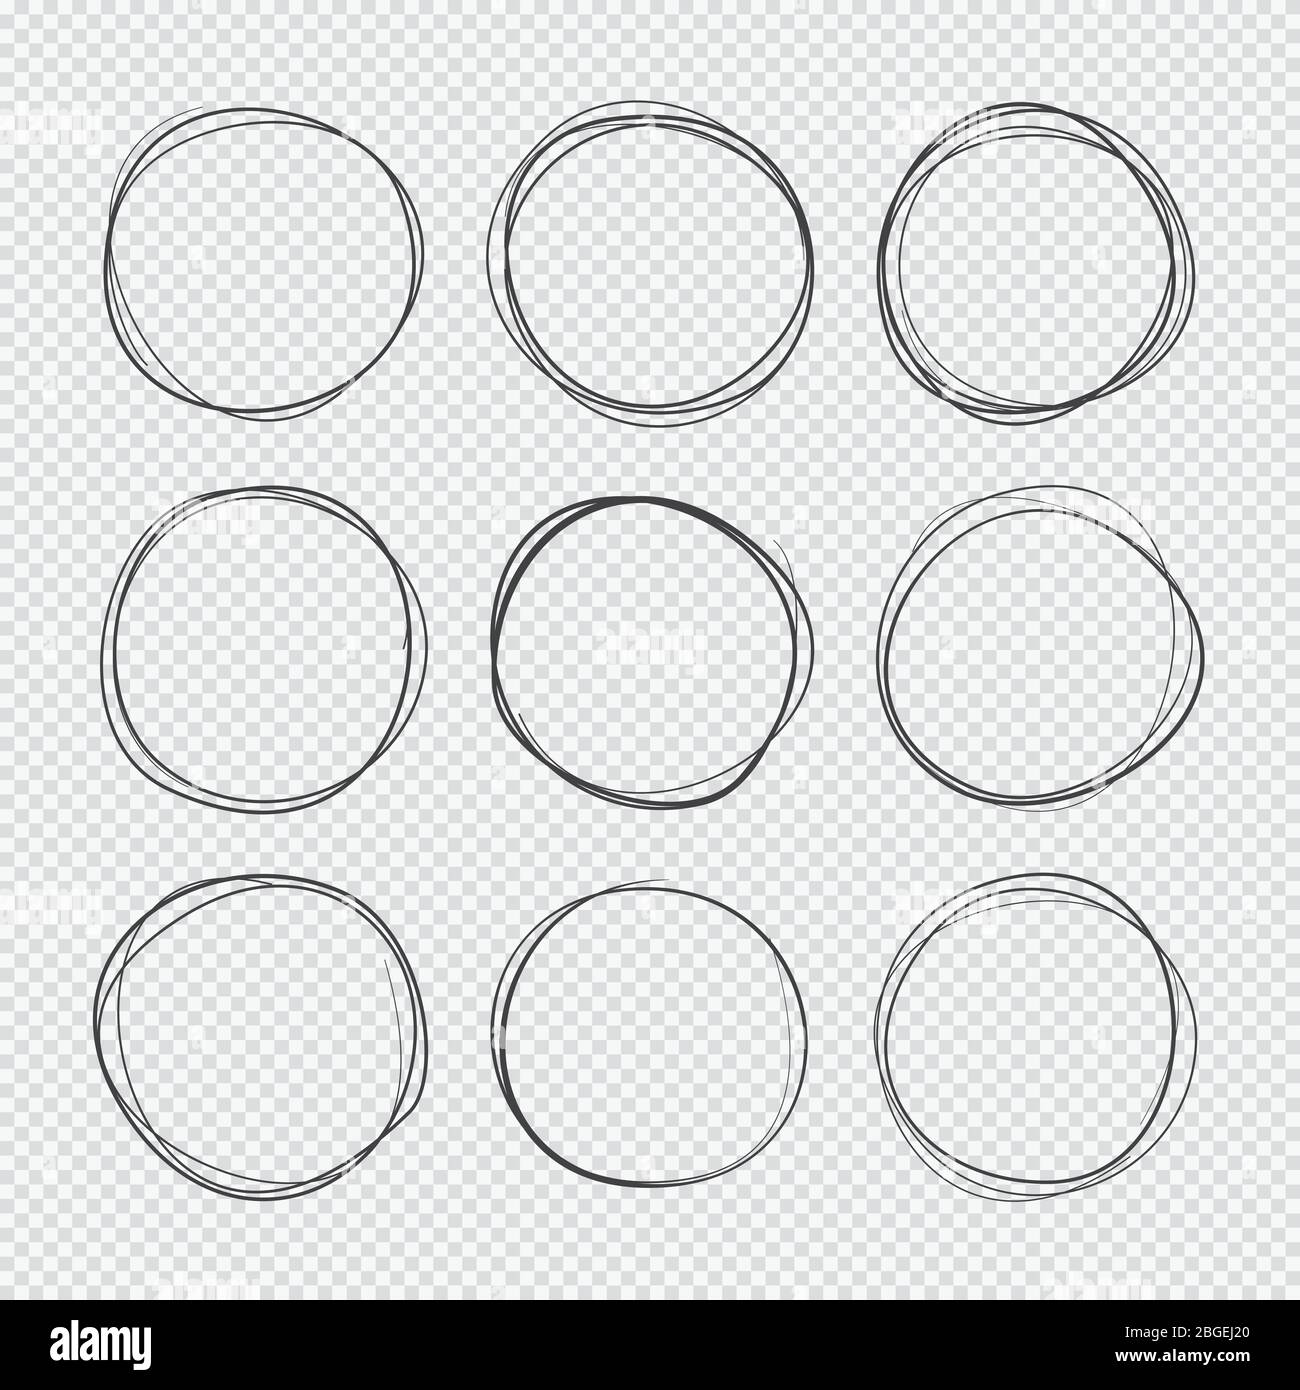 Kritzeln skizzierte Kreise. Handgezeichnete Scribble-Ringe isolierter Vektorsatz. Doodle Kreis Ring Kritzeln und Skizze, kreisförmige und runde Kratzstrich Illustration Stock Vektor